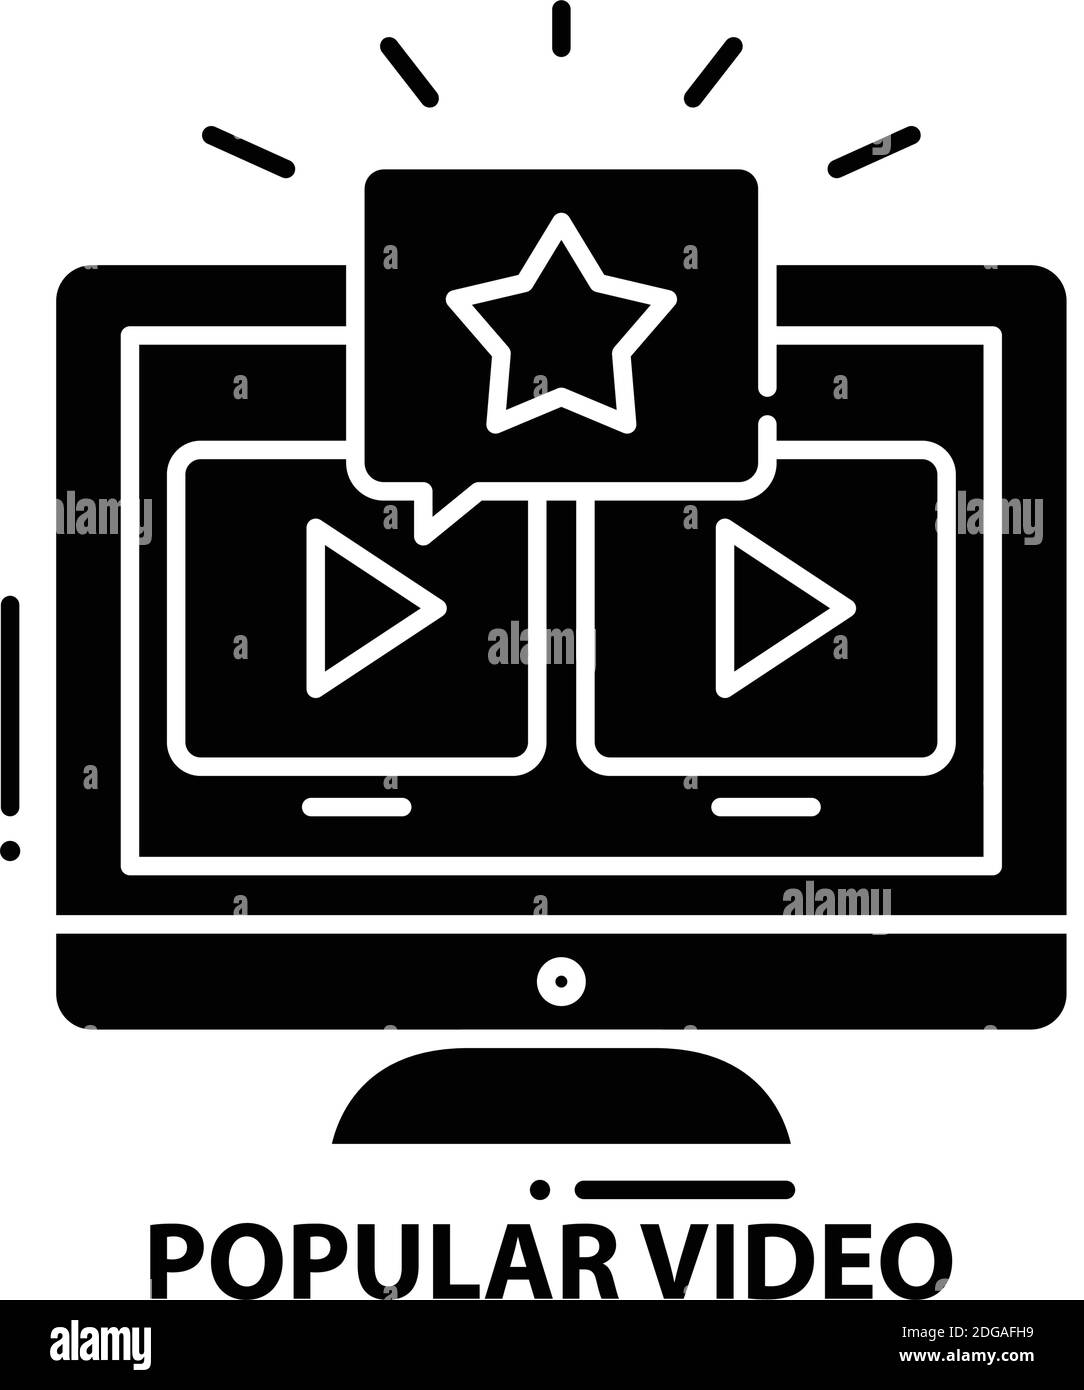 Beliebtes Video-Symbol, schwarzes Vektorzeichen mit editierbaren Konturen, Konzeptdarstellung Stock Vektor